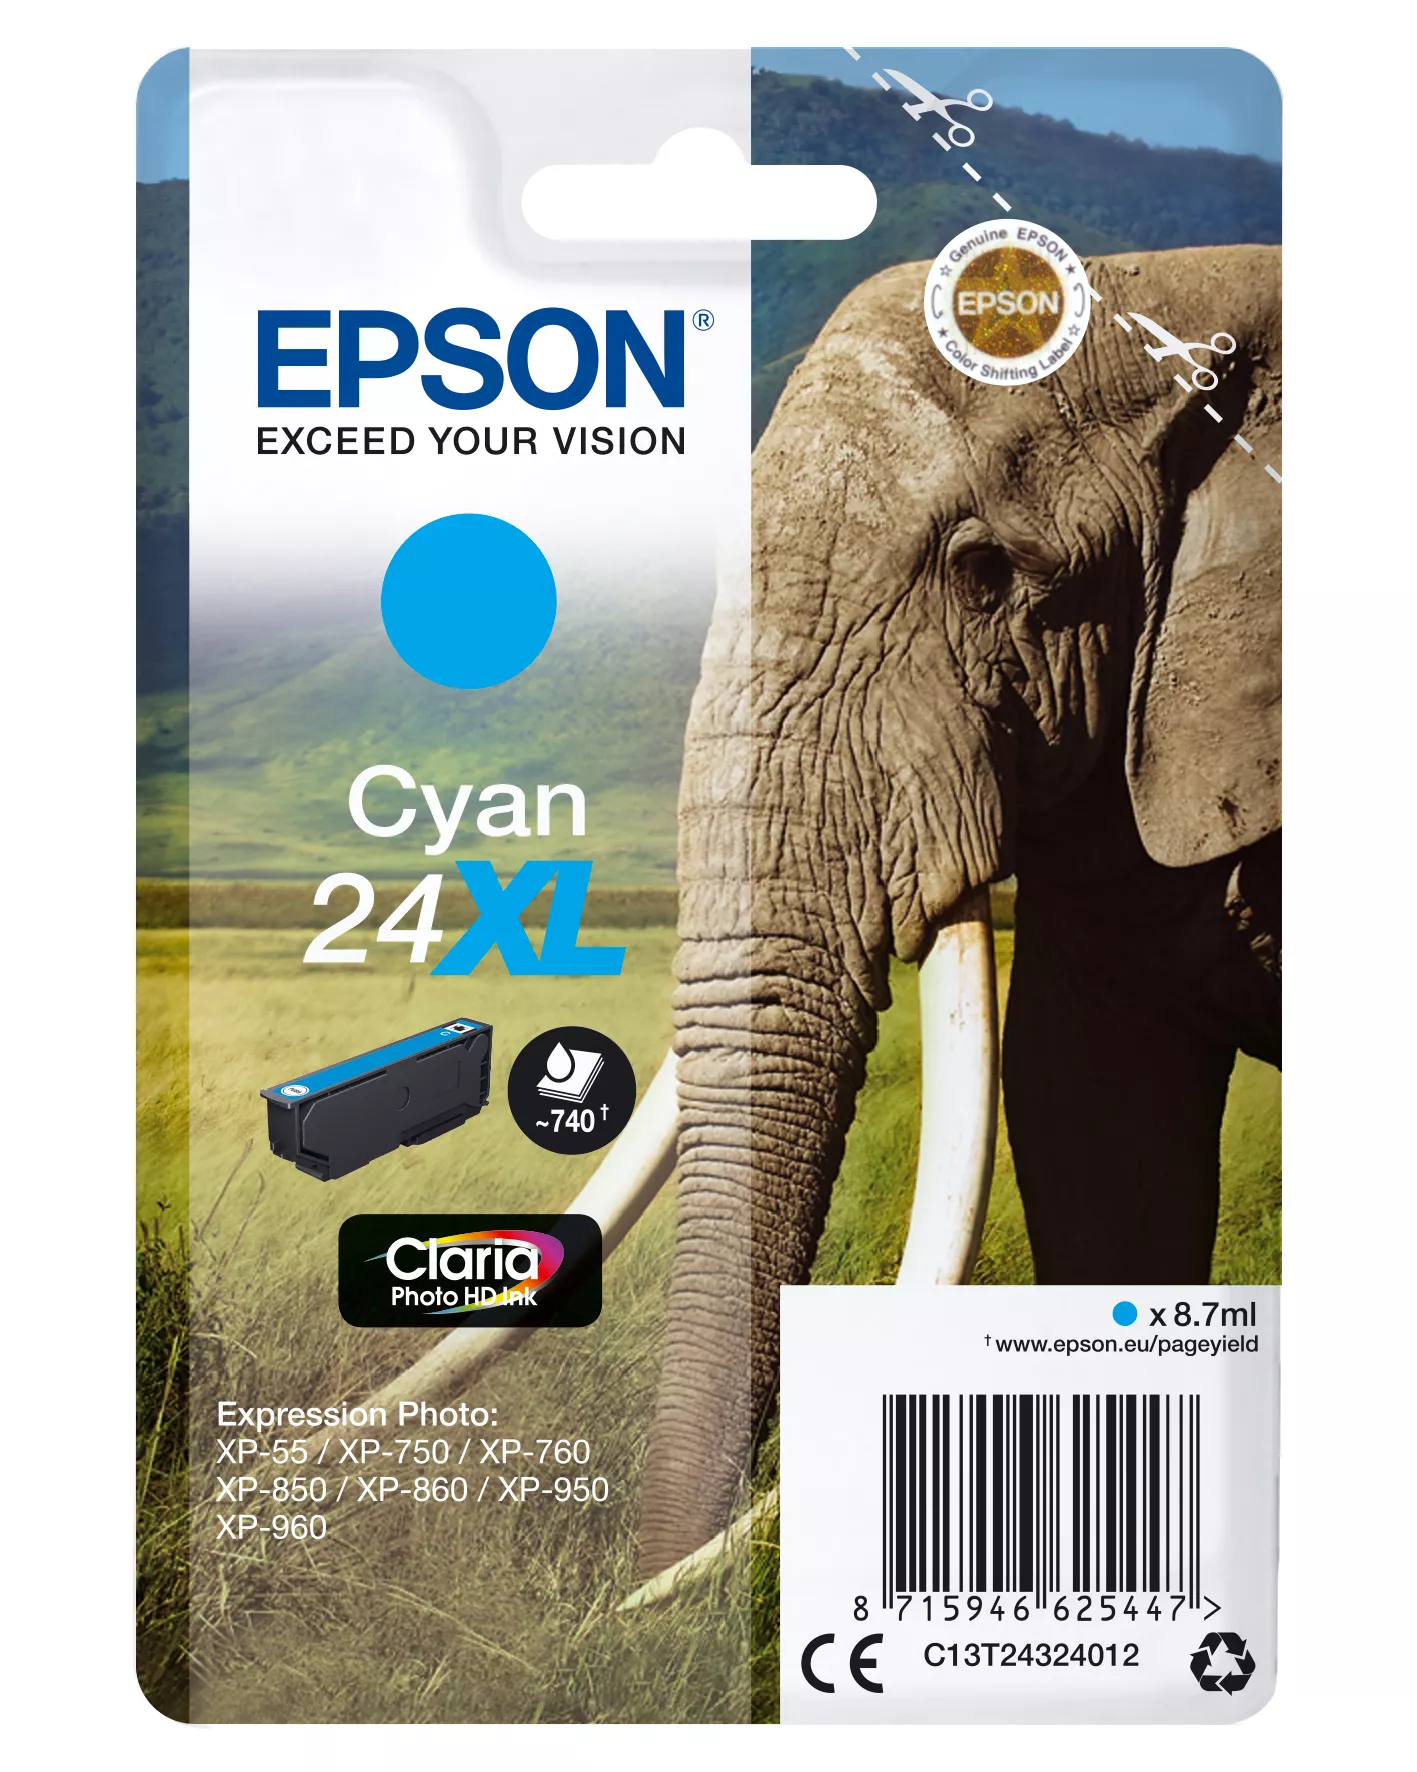 Achat EPSON 24XL cartouche dencre cyan haute capacité 8.7ml 740 au meilleur prix